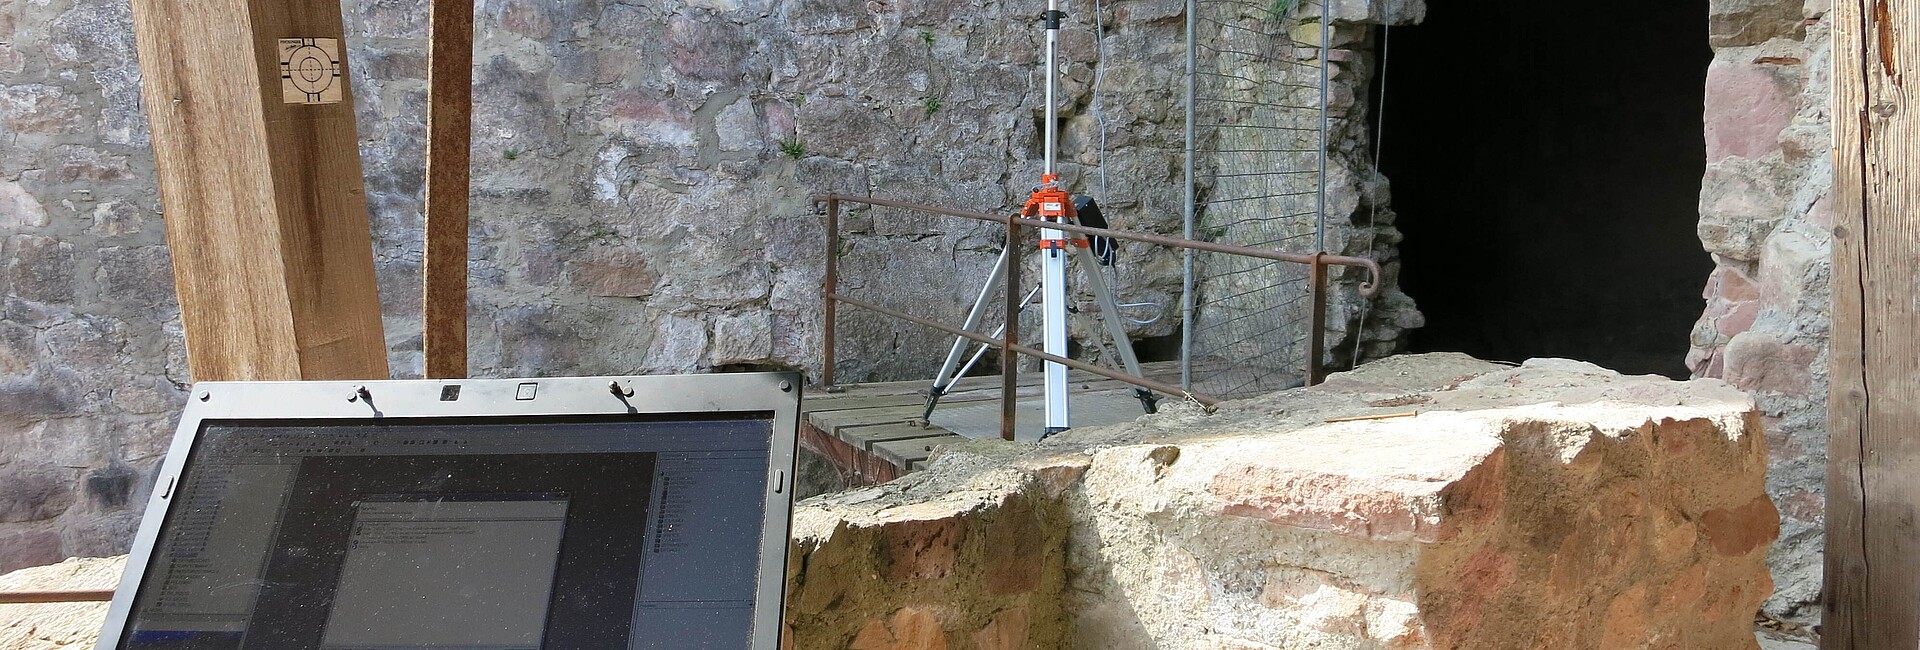 Bild zeigt den Einsatz eines terrestrischen Laserscanners in der archäologischen Denkmalpflege.